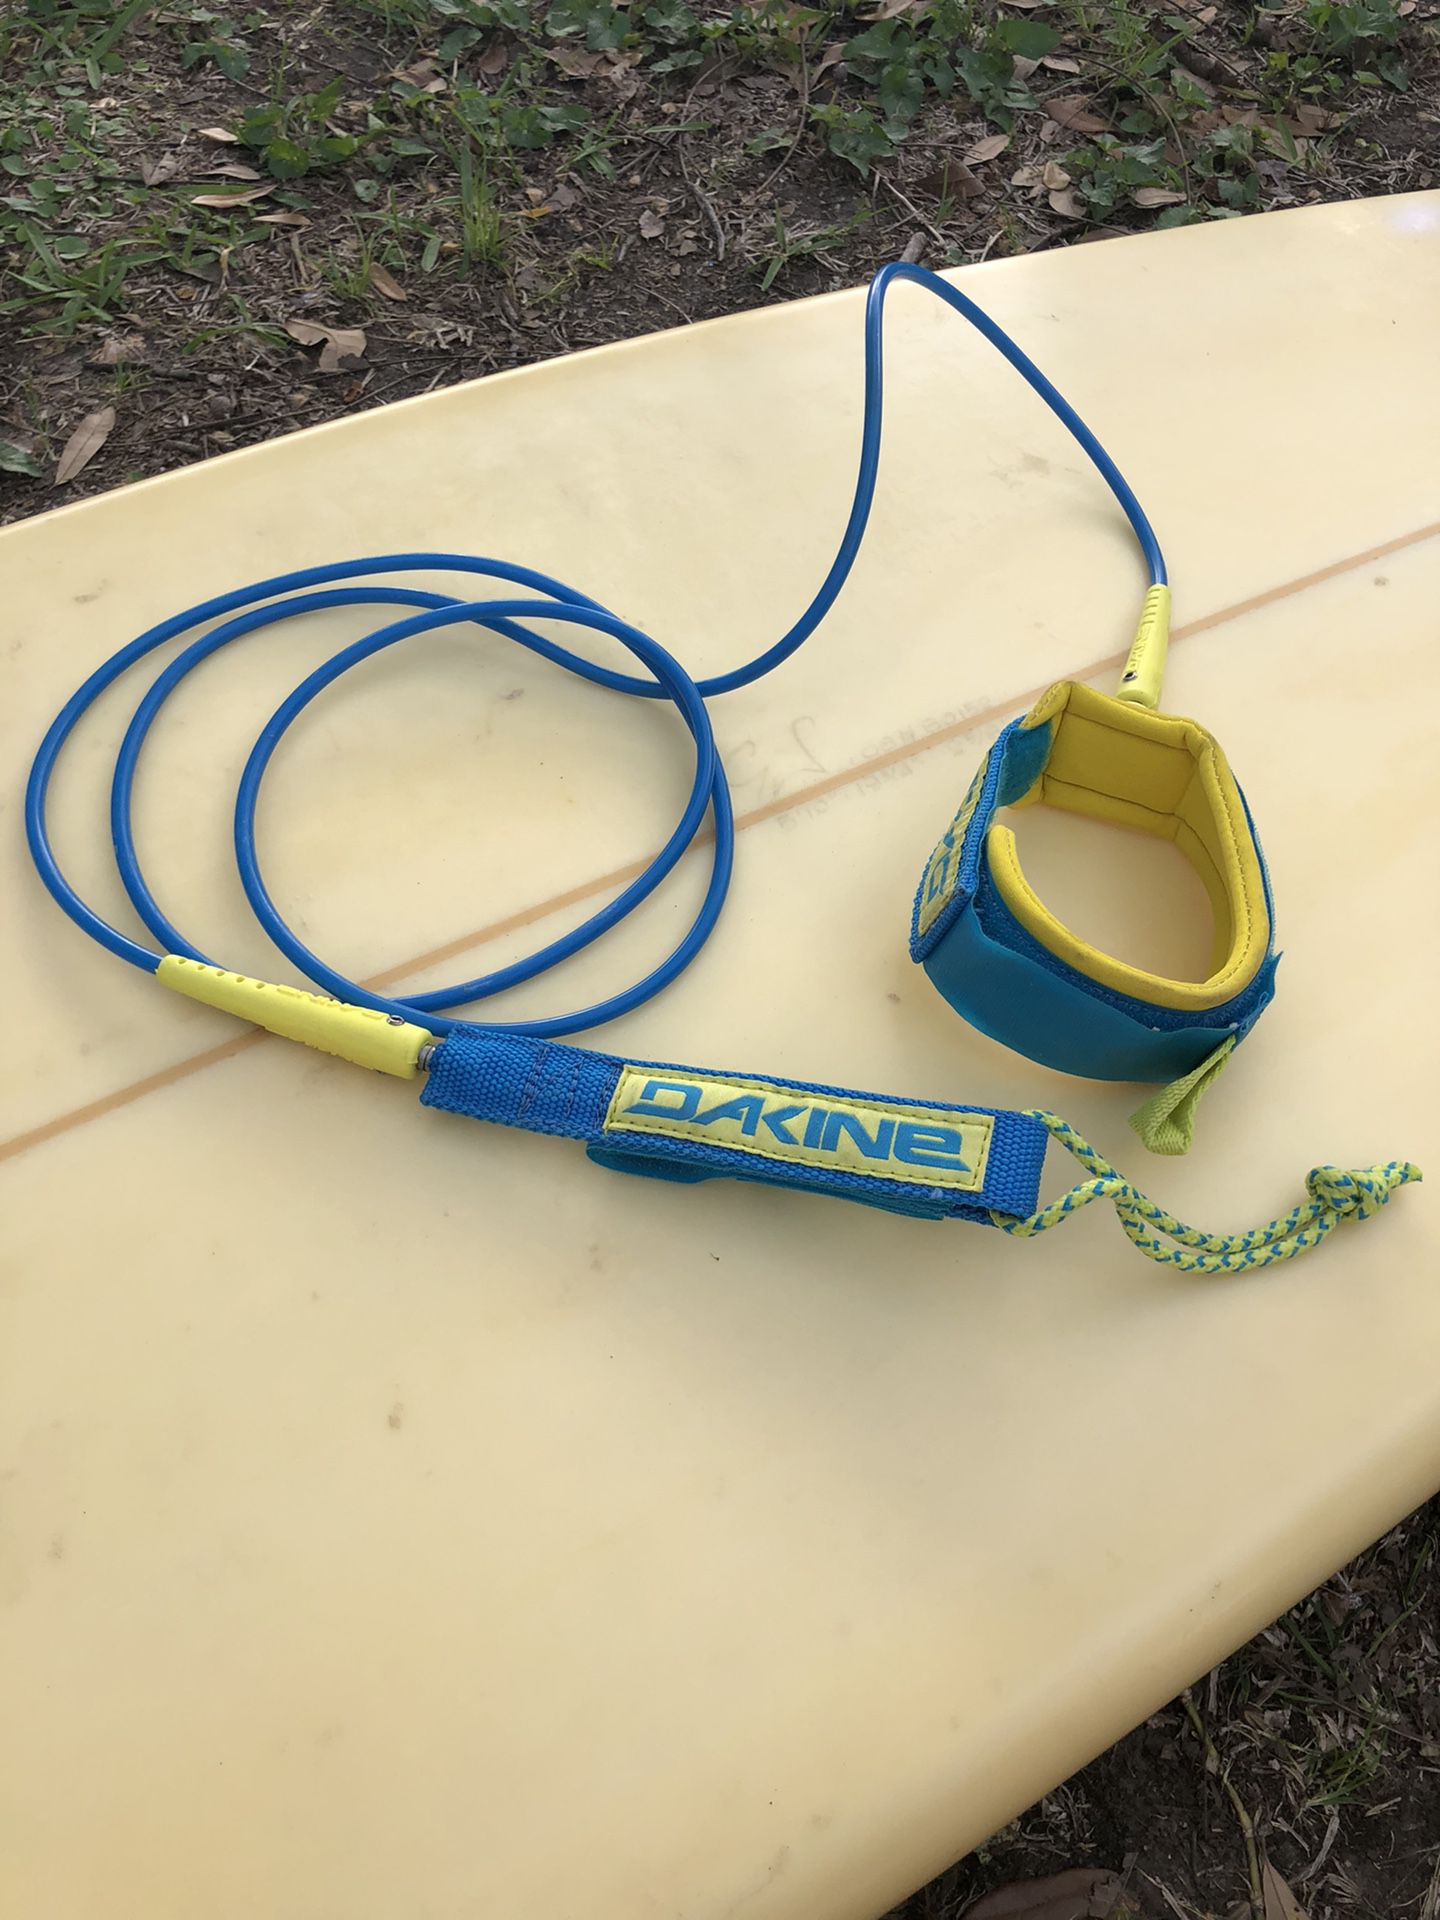 Dakine 6’ surf leash and wax + fin key